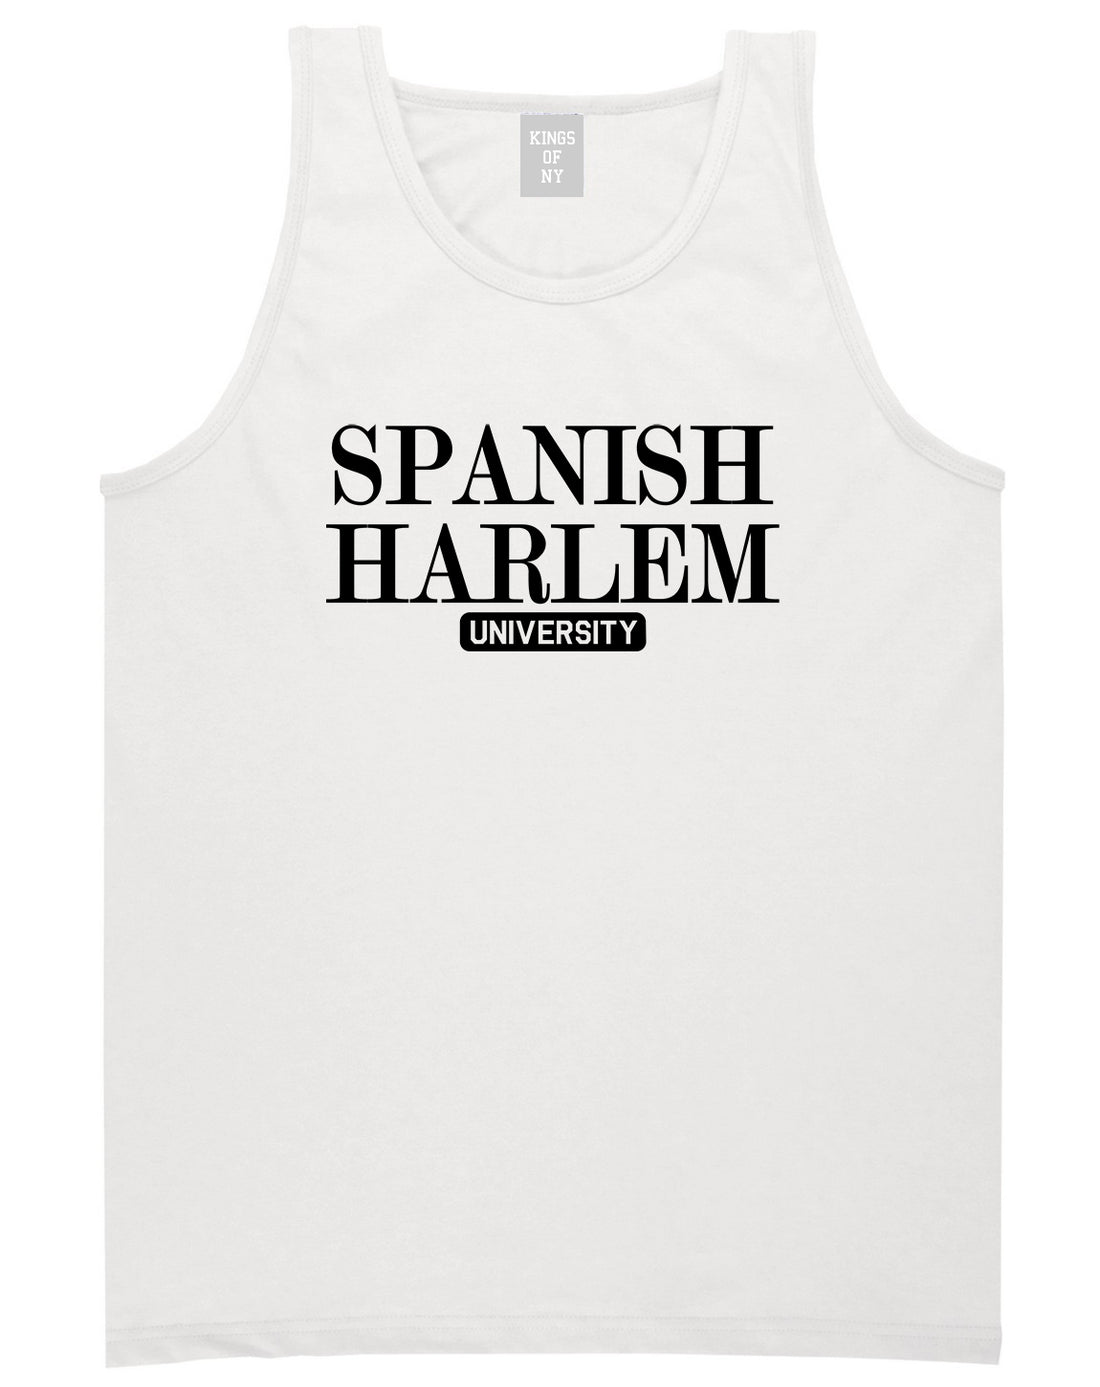 Spanish Harlem University New York Mens Tank Top T-Shirt White